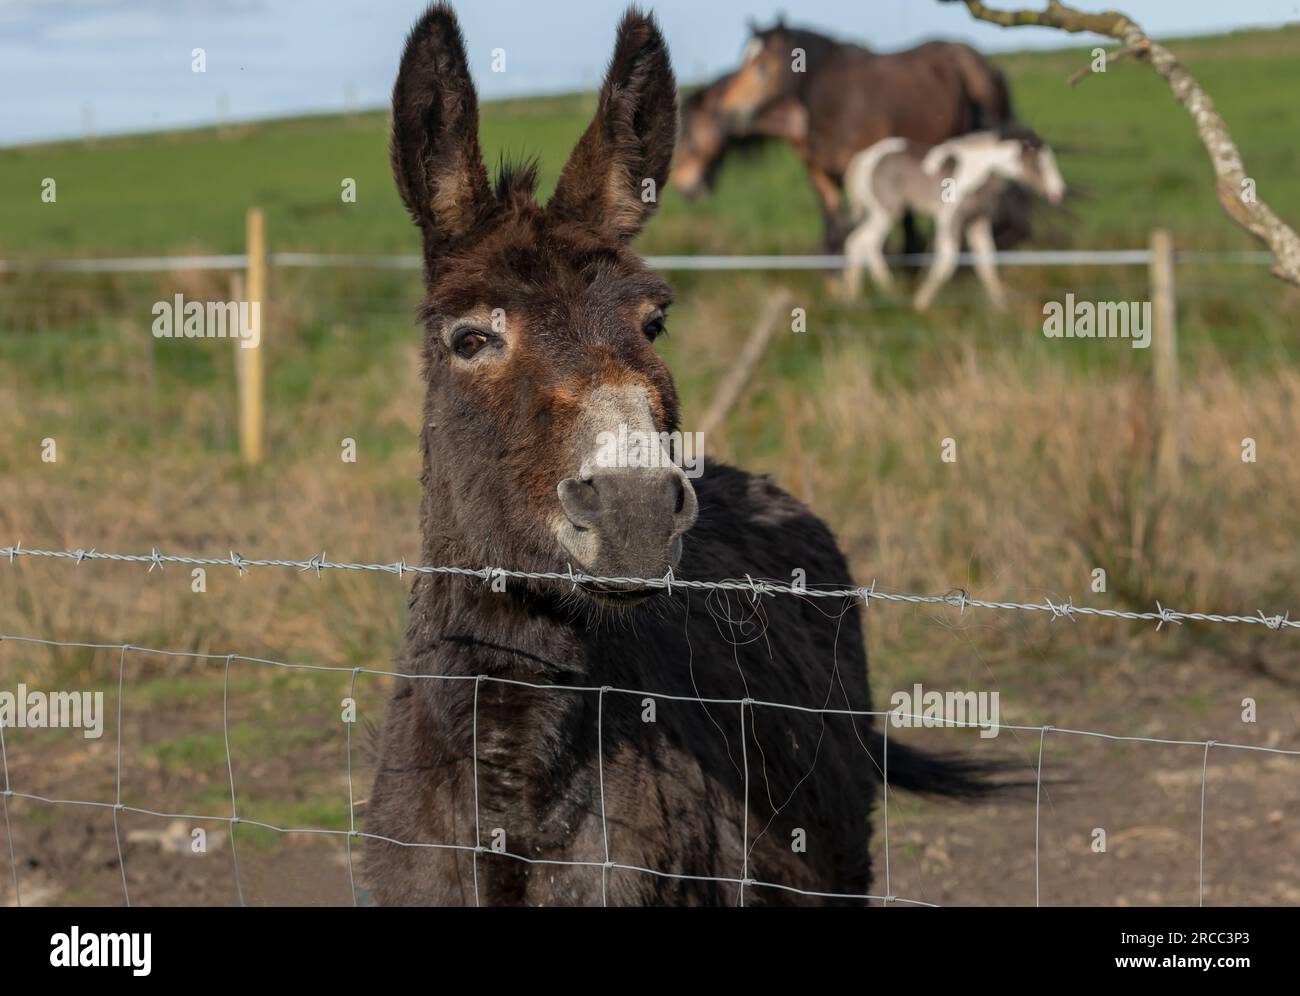 Burro marrón mirando sobre una valla con caballos de mazorca irlandeses en el bbakground Foto de stock